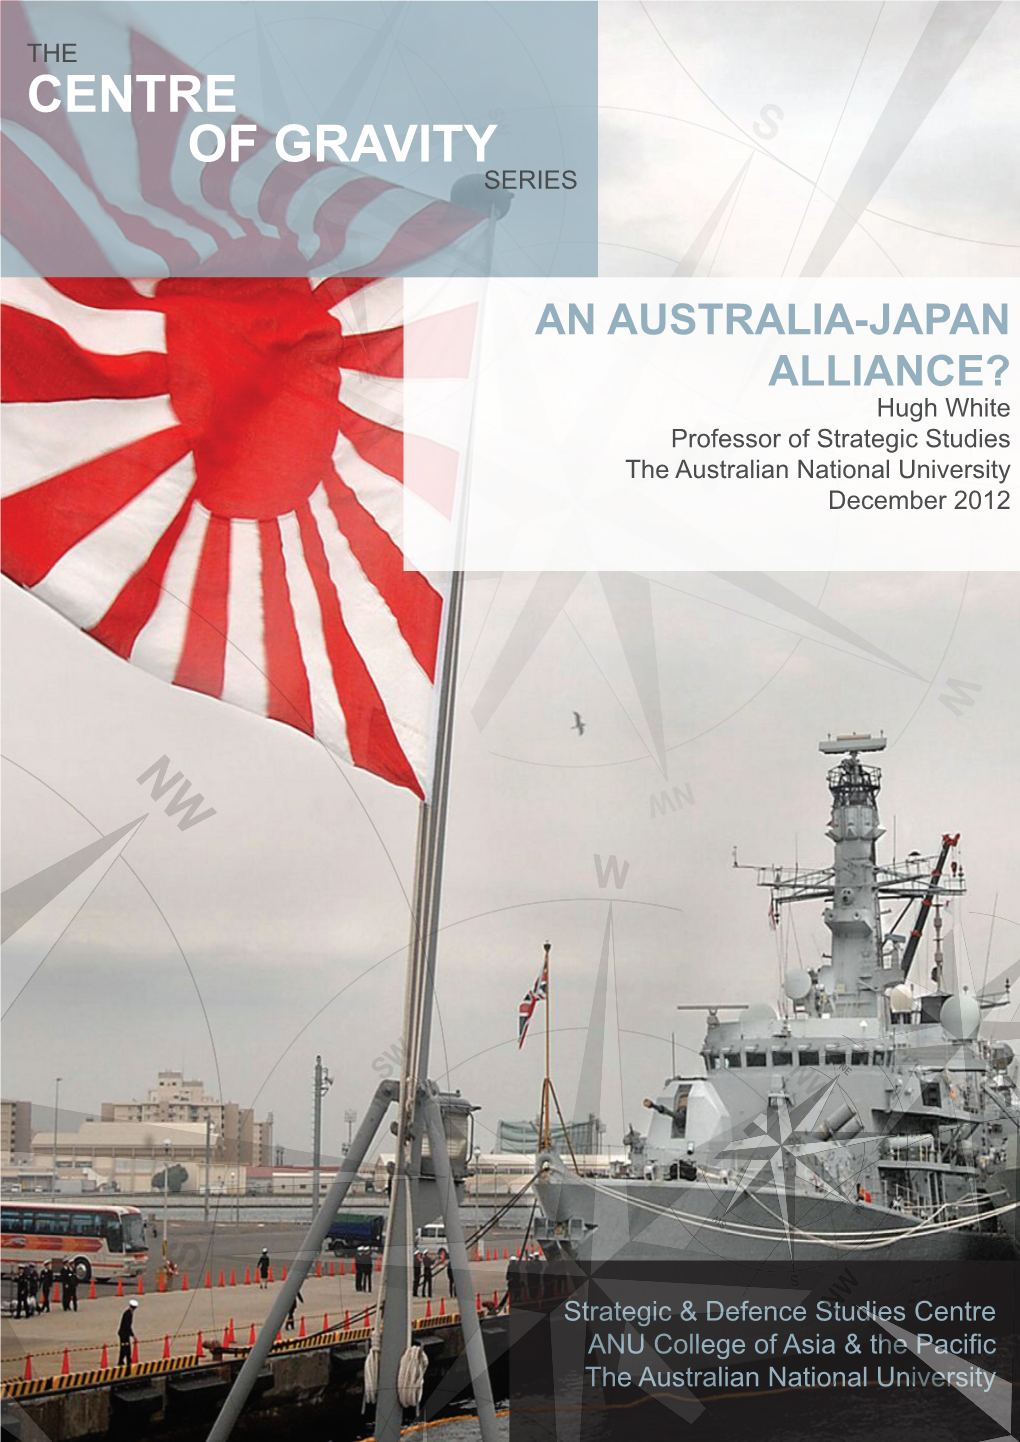 An Australia-Japan Alliance? Hugh White Professor of Strategic Studies the Australian National University December 2012